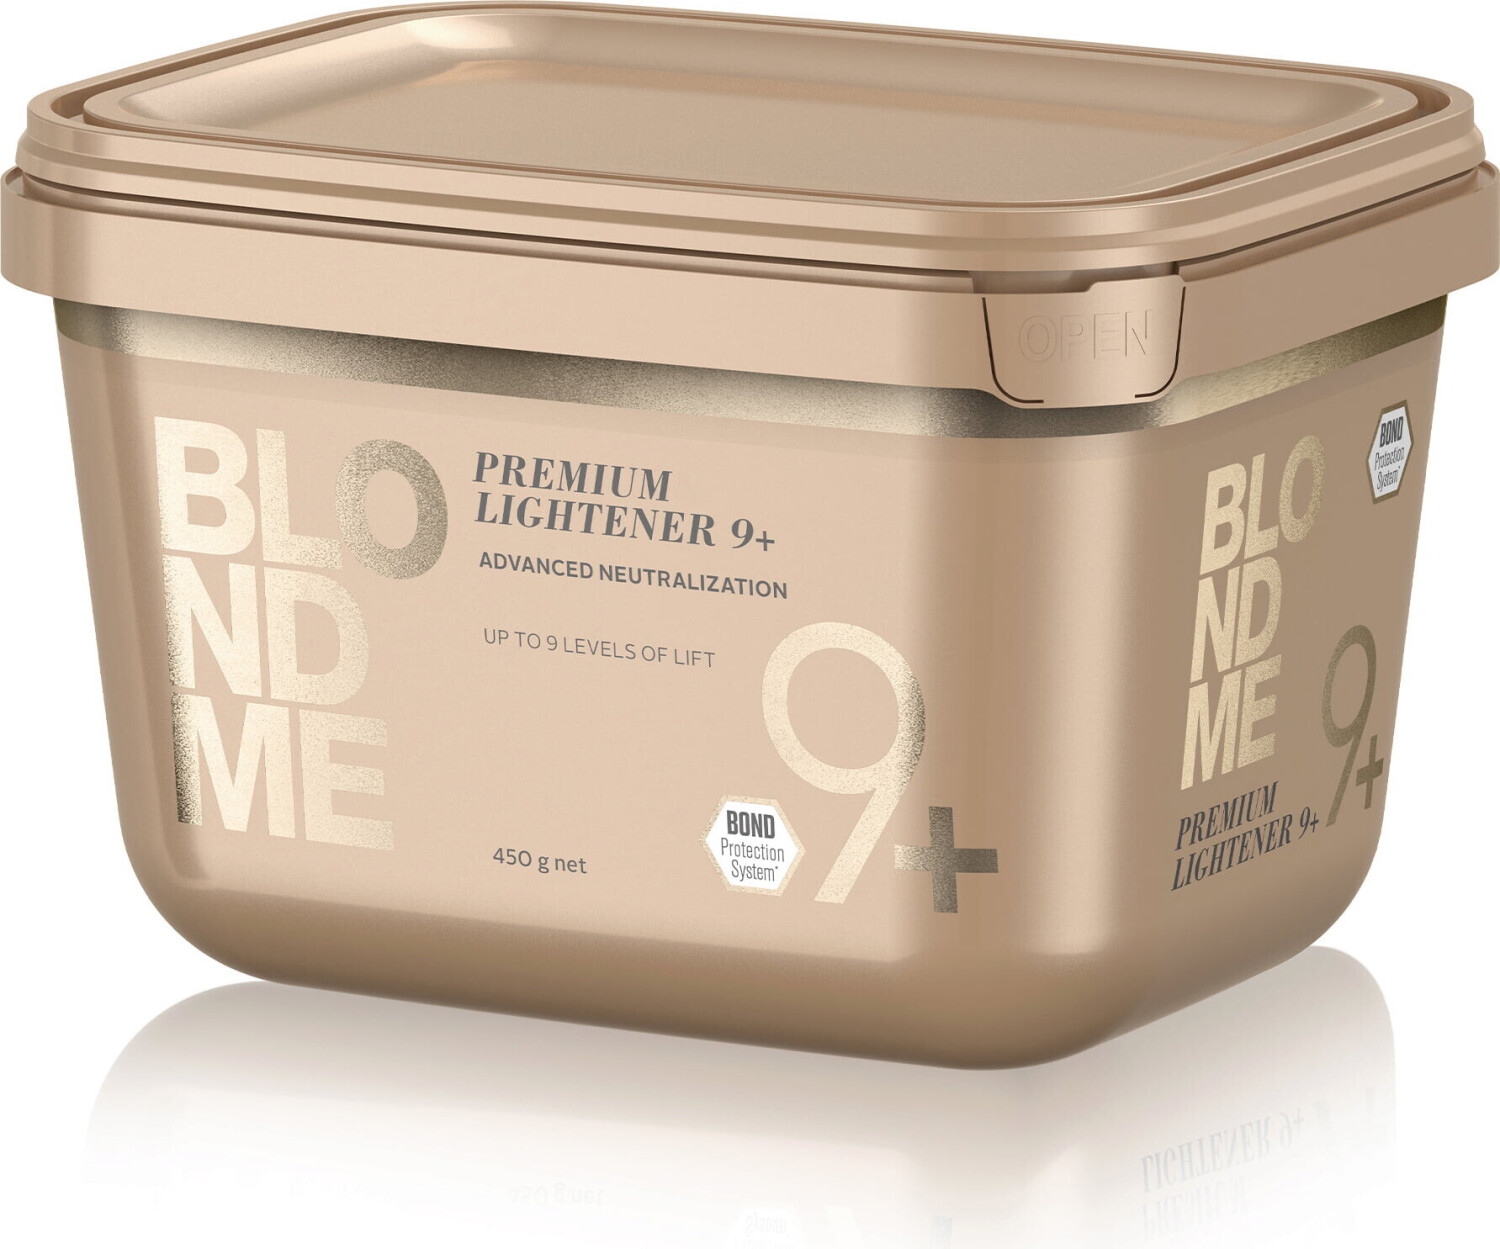 6. Schwarzkopf Professional BlondMe Bond Enforcing Premium Lightener - wide 5